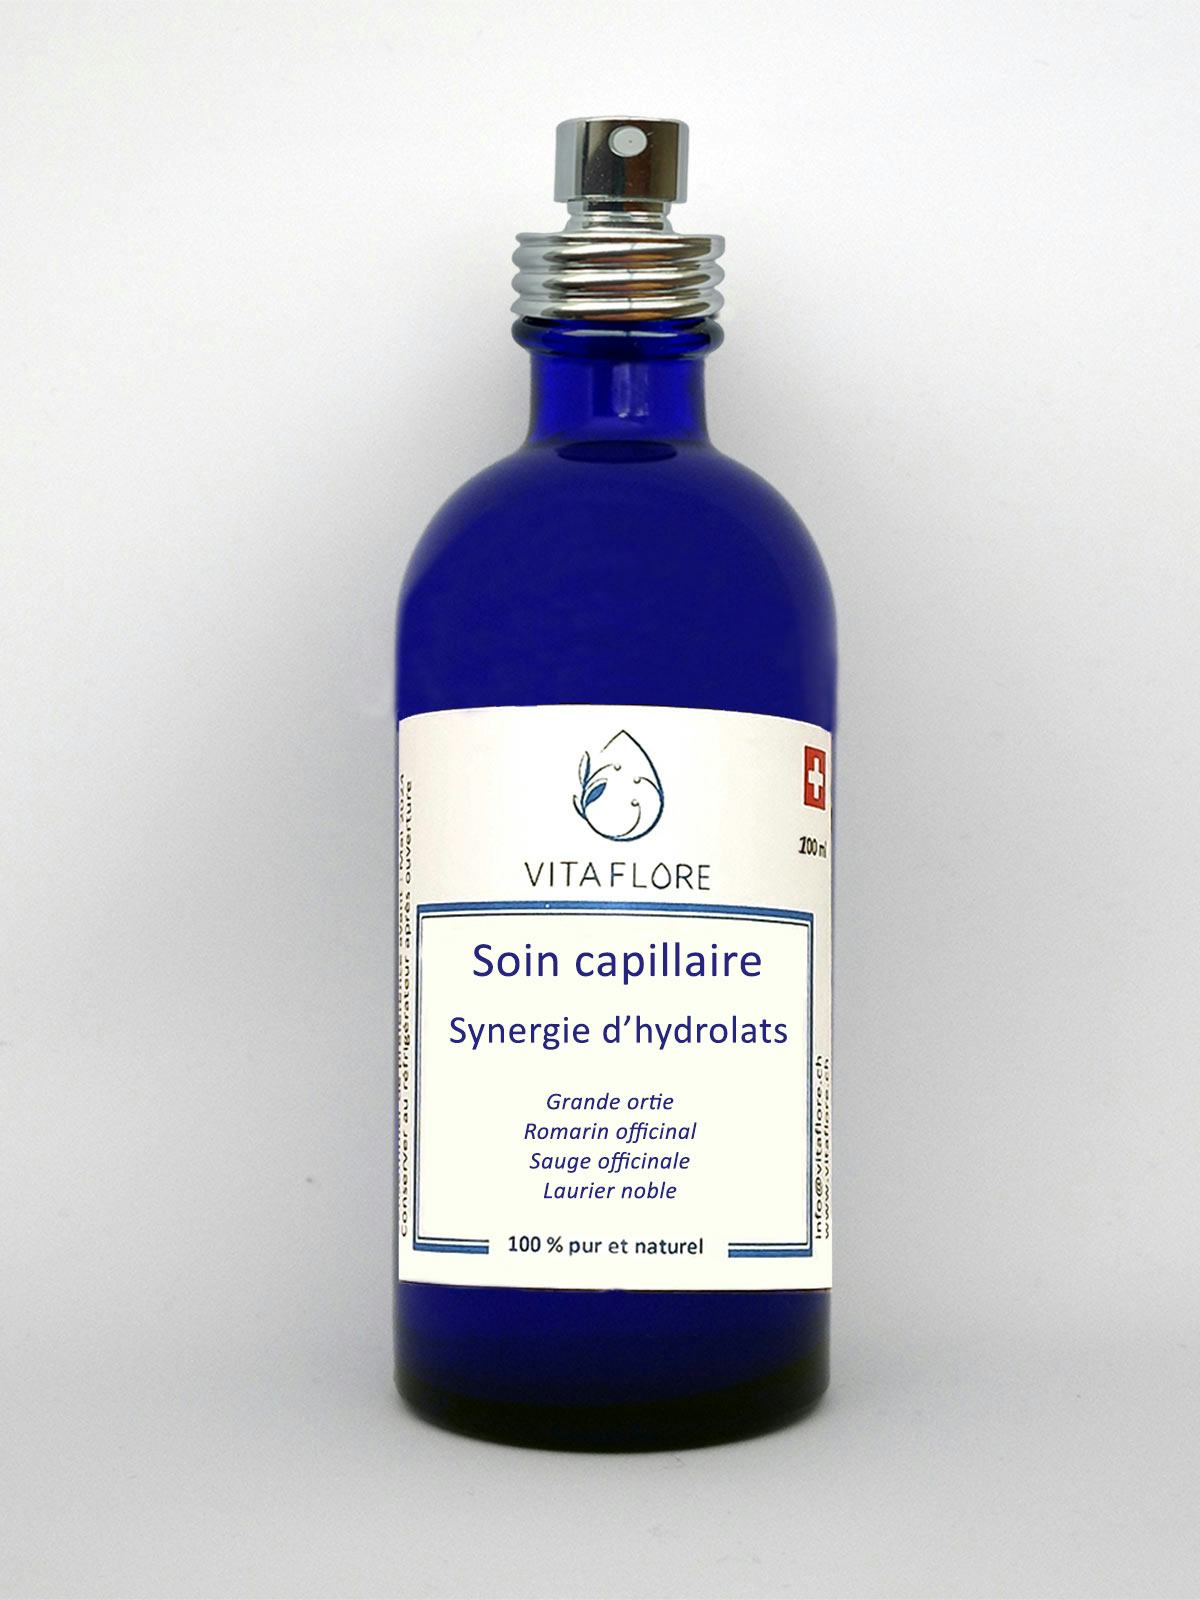 Synergie d’hydrolats – Soin capillaire, handwerkliches Produkt für den Direktverkauf in der Schweiz